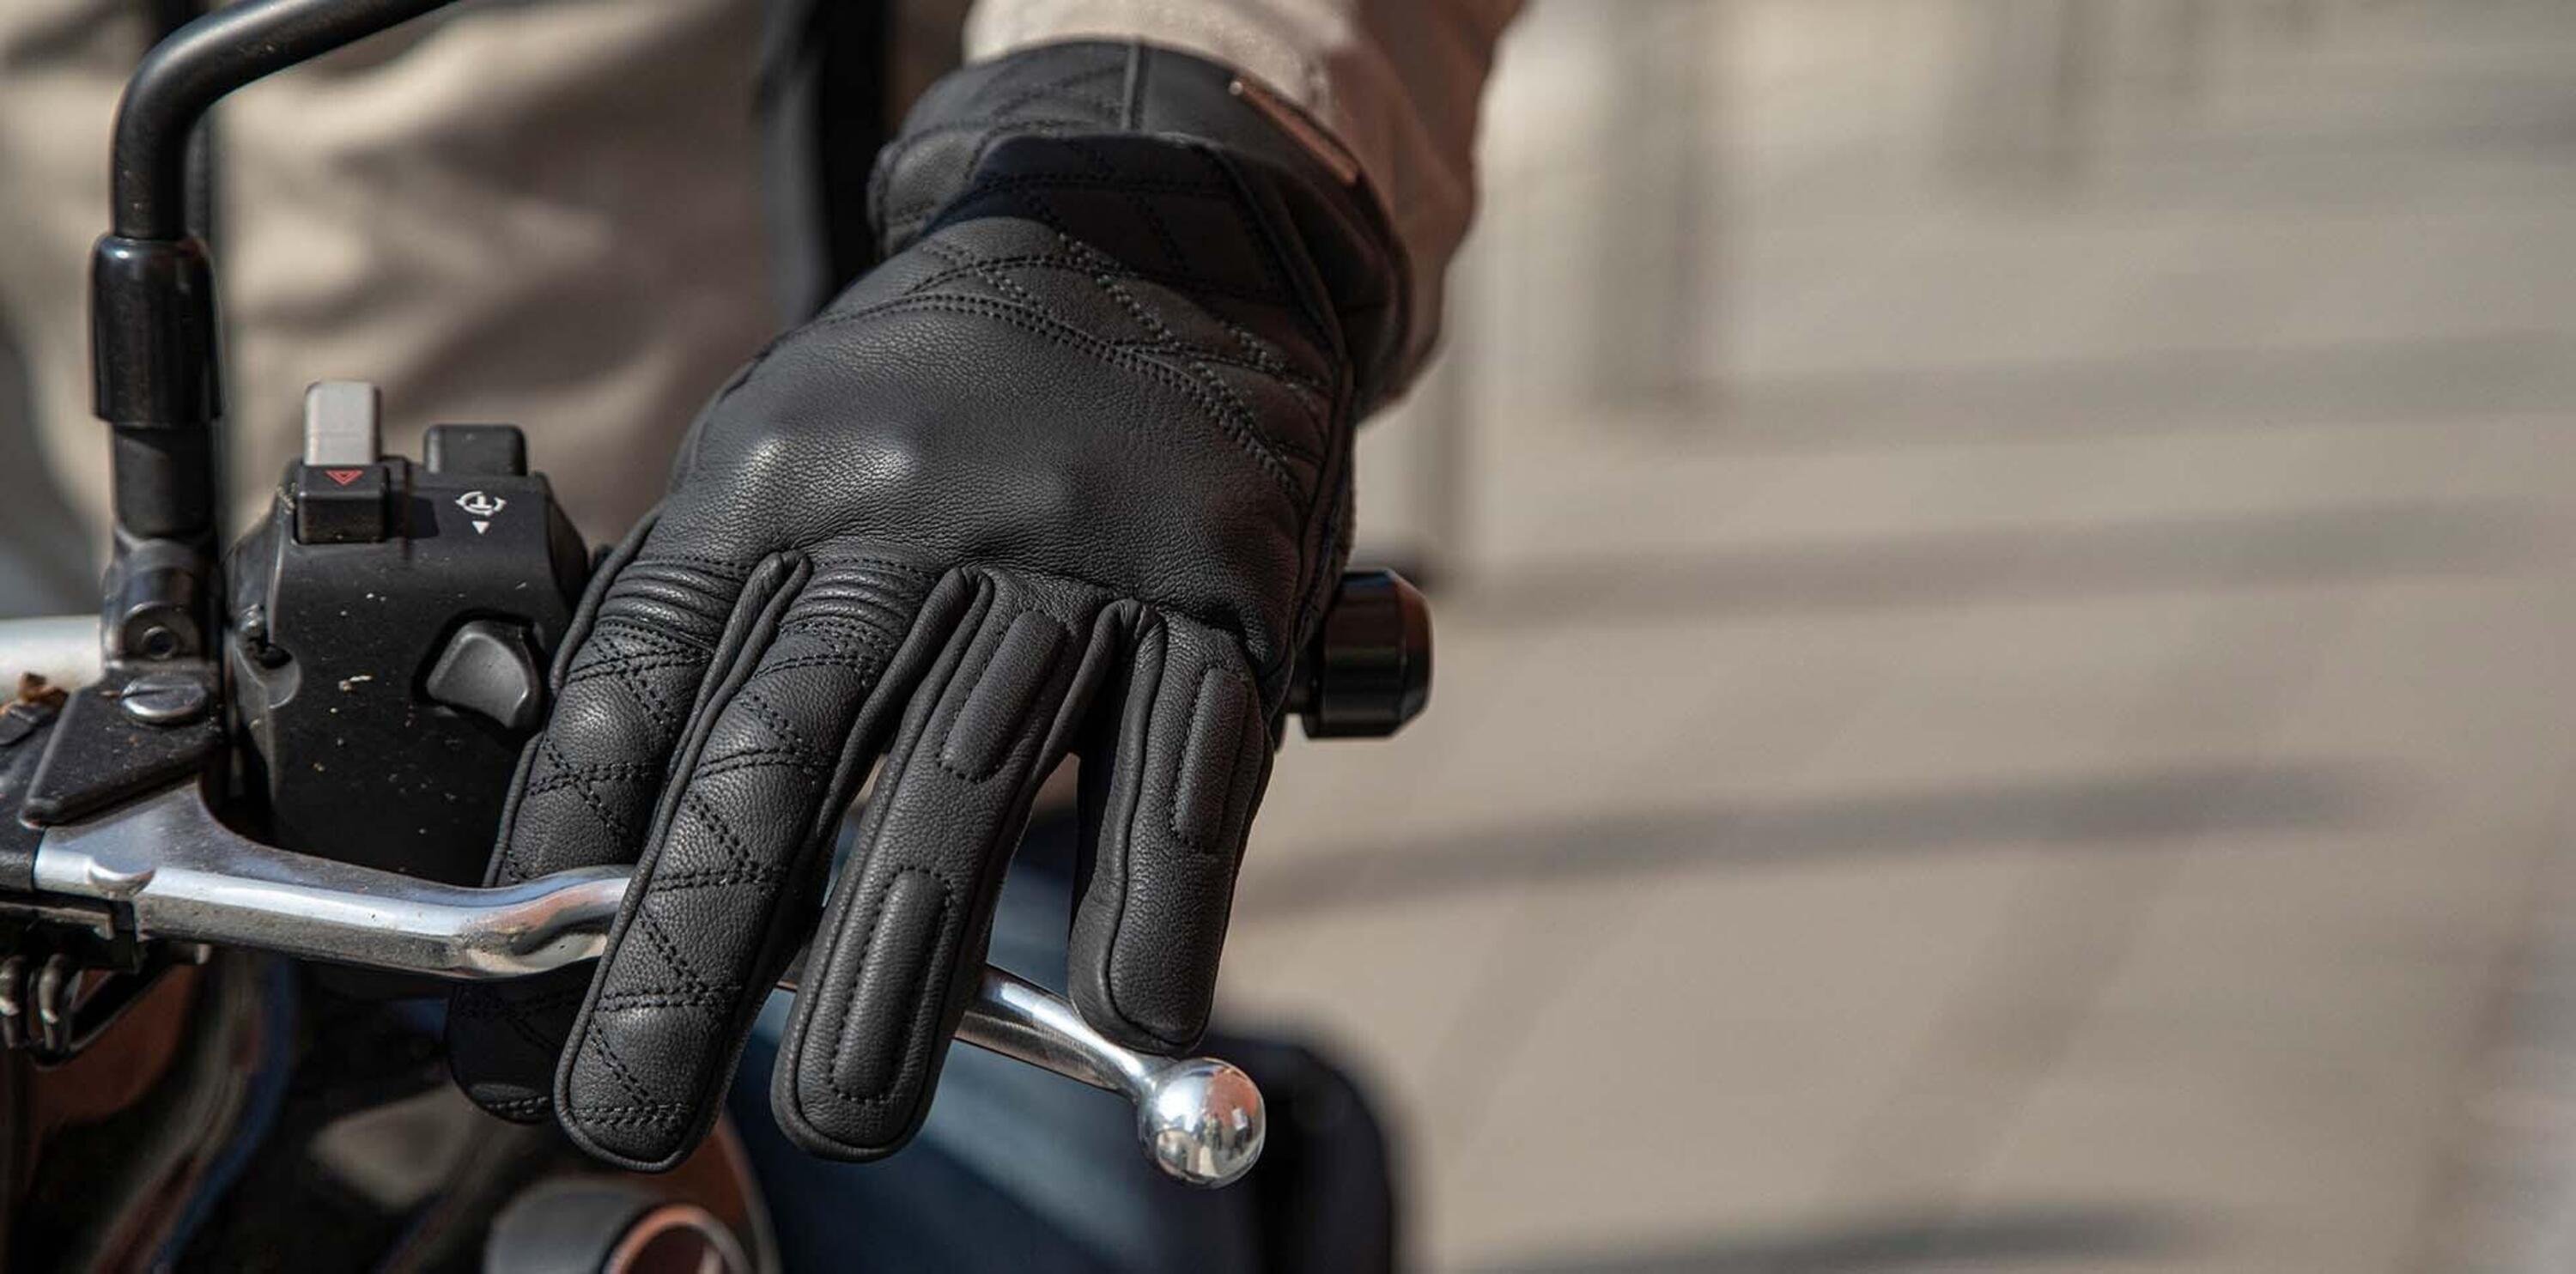 Inverno in moto: i migliori guanti - Accessori 